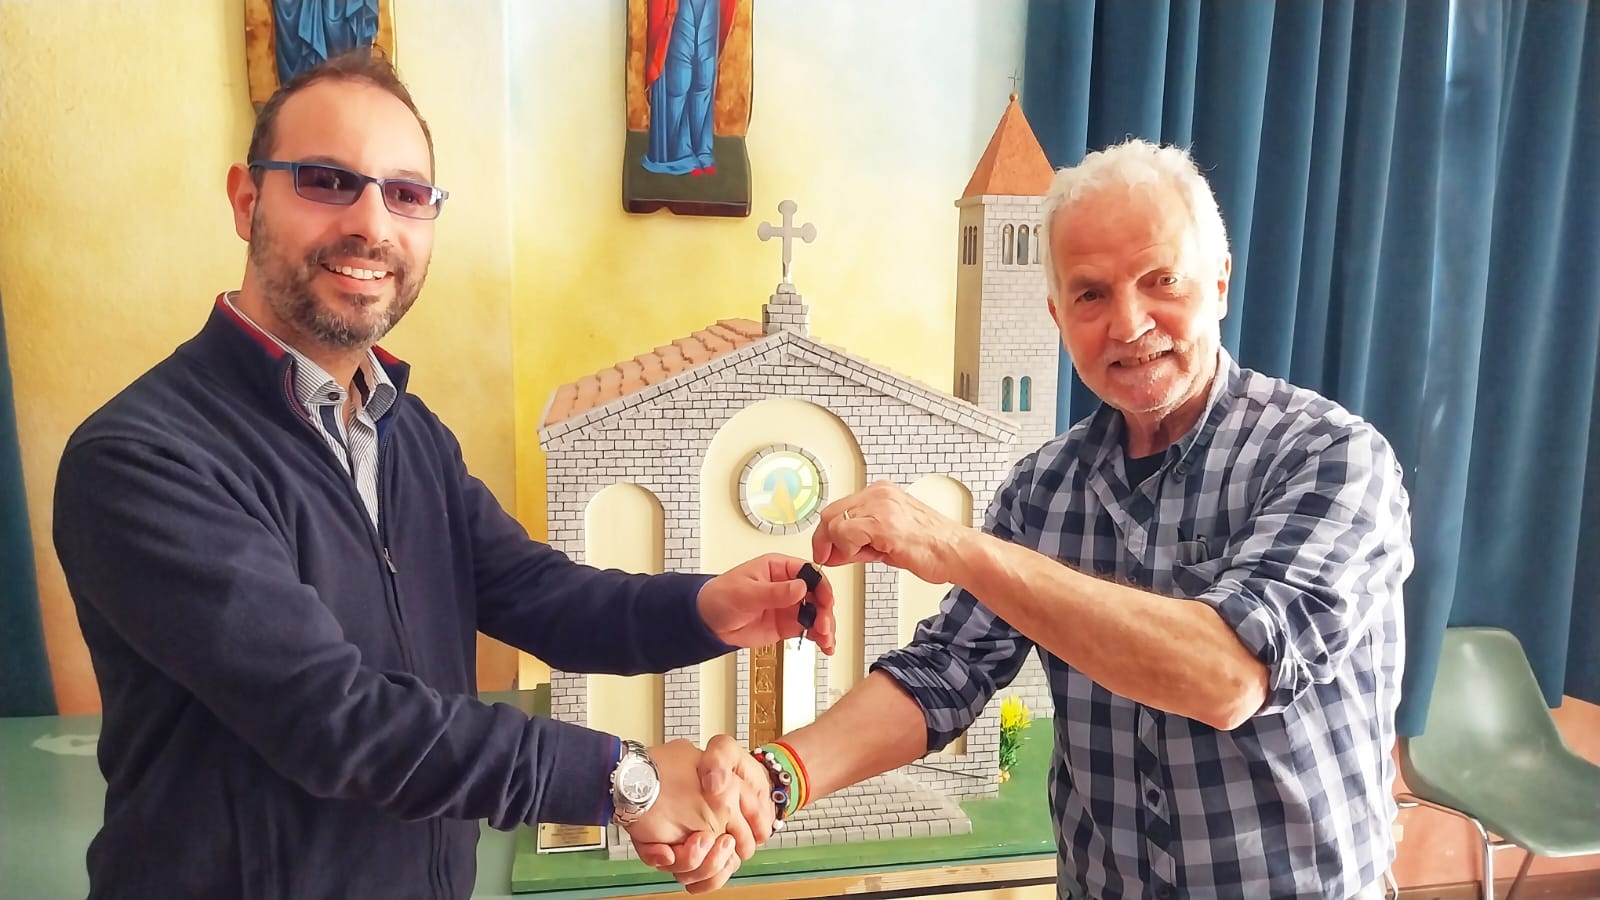 L'artista Mario Lai dona una riproduzione fedele della Chiesa di Stella Maris a don Filippo Corrias